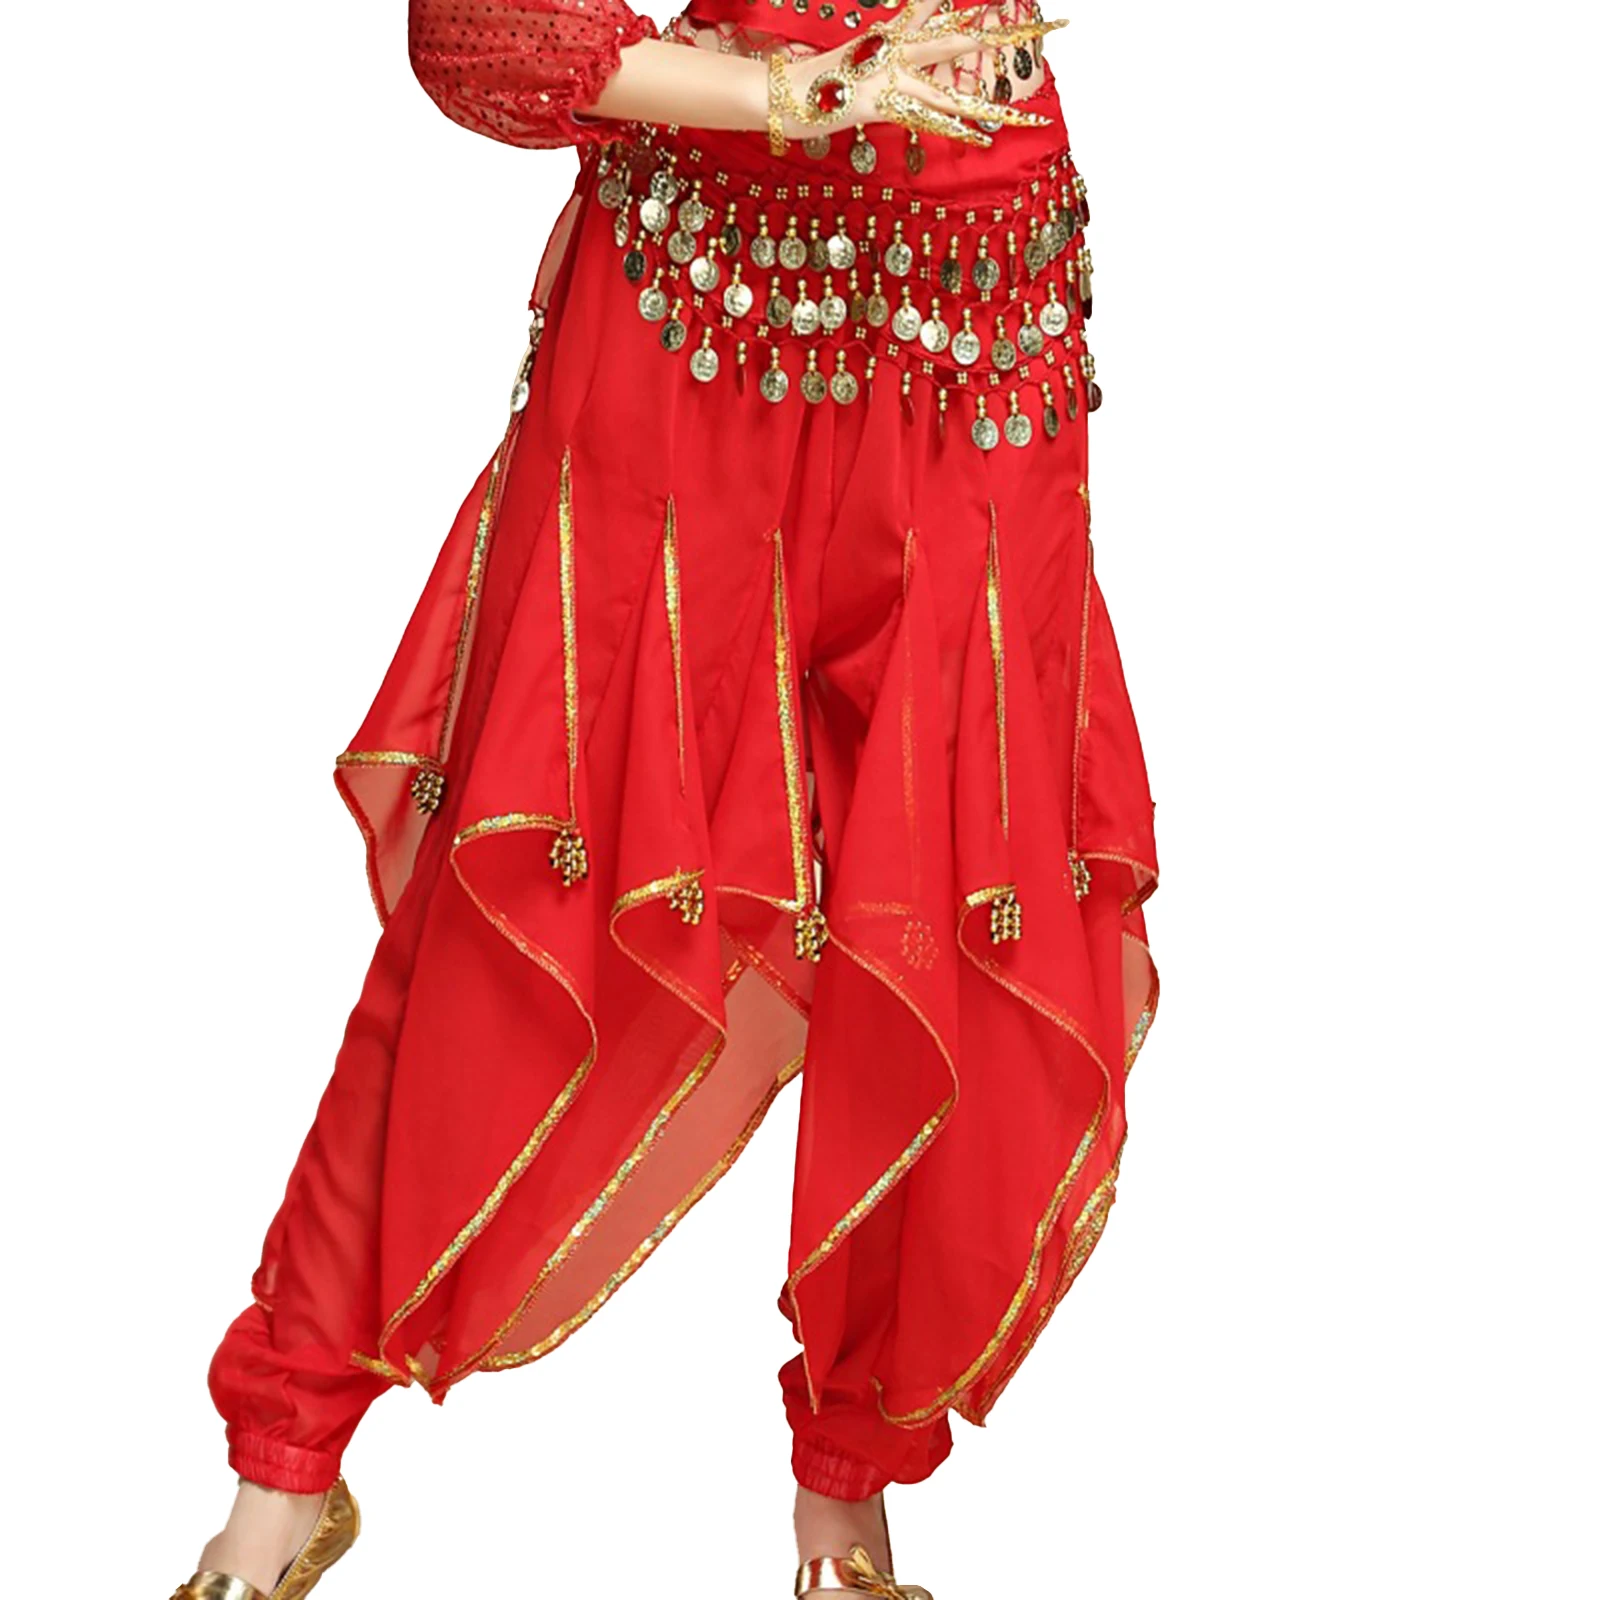 נשים מזרחיות הודו ריקודי בטן ביצועים תחפושת נצנצים Trim מכנסי גומי אלסטי קפלים מכנסיים עם חרוזי פלסטיק - 0